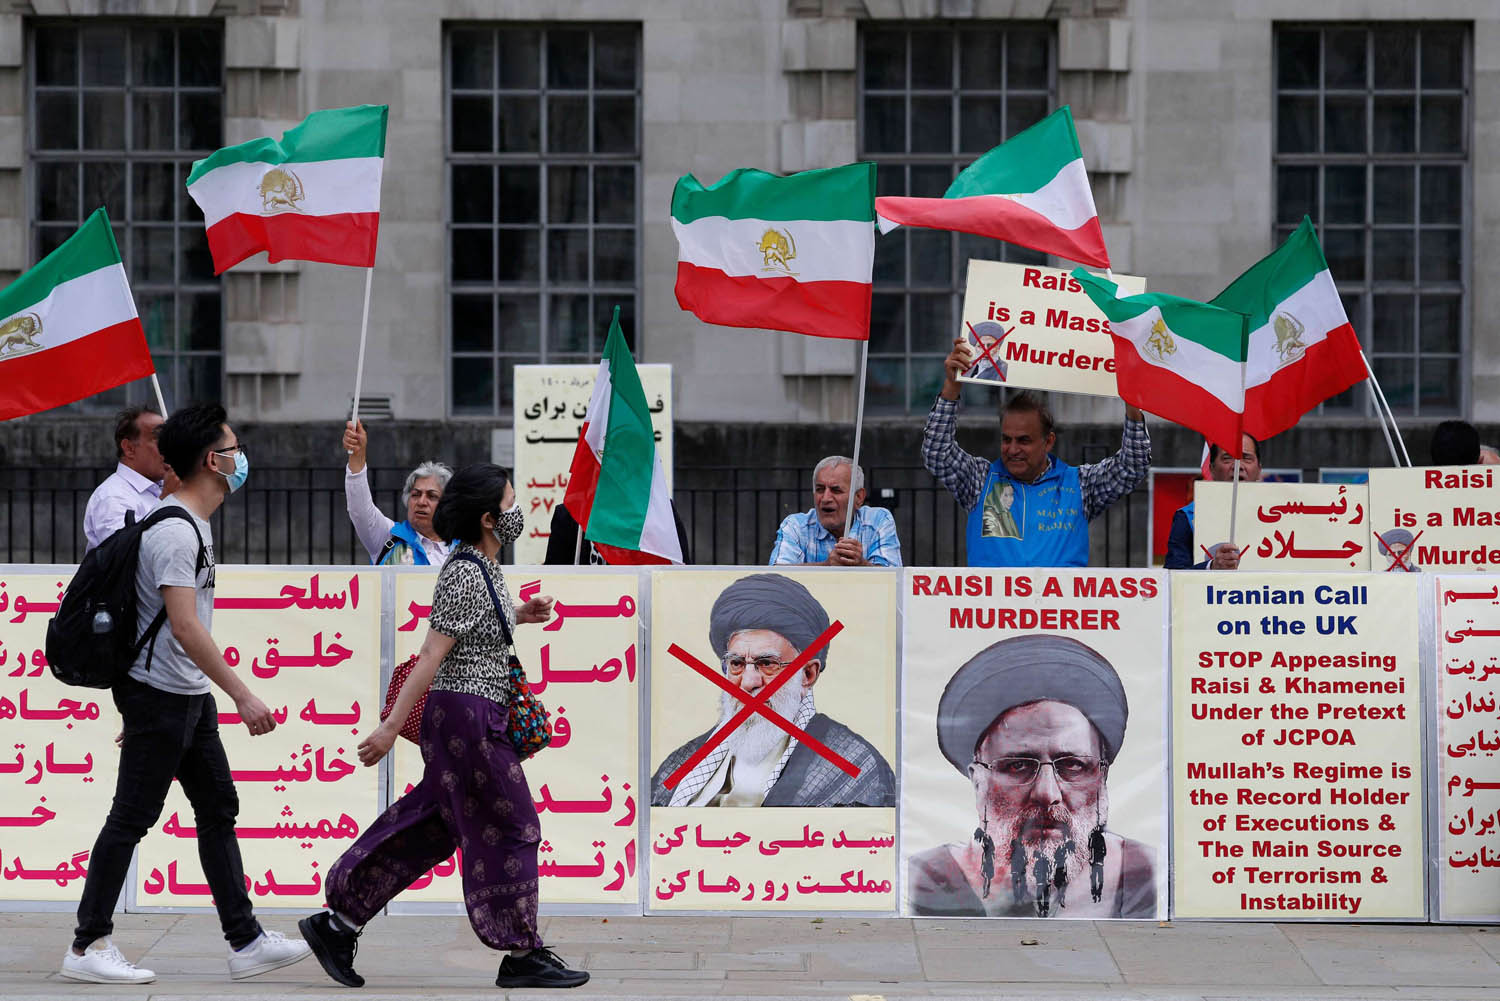 تظاهرة إيرانية في لندن ضد تنصيب الرئيس الإيراني إبراهيم رئيسي